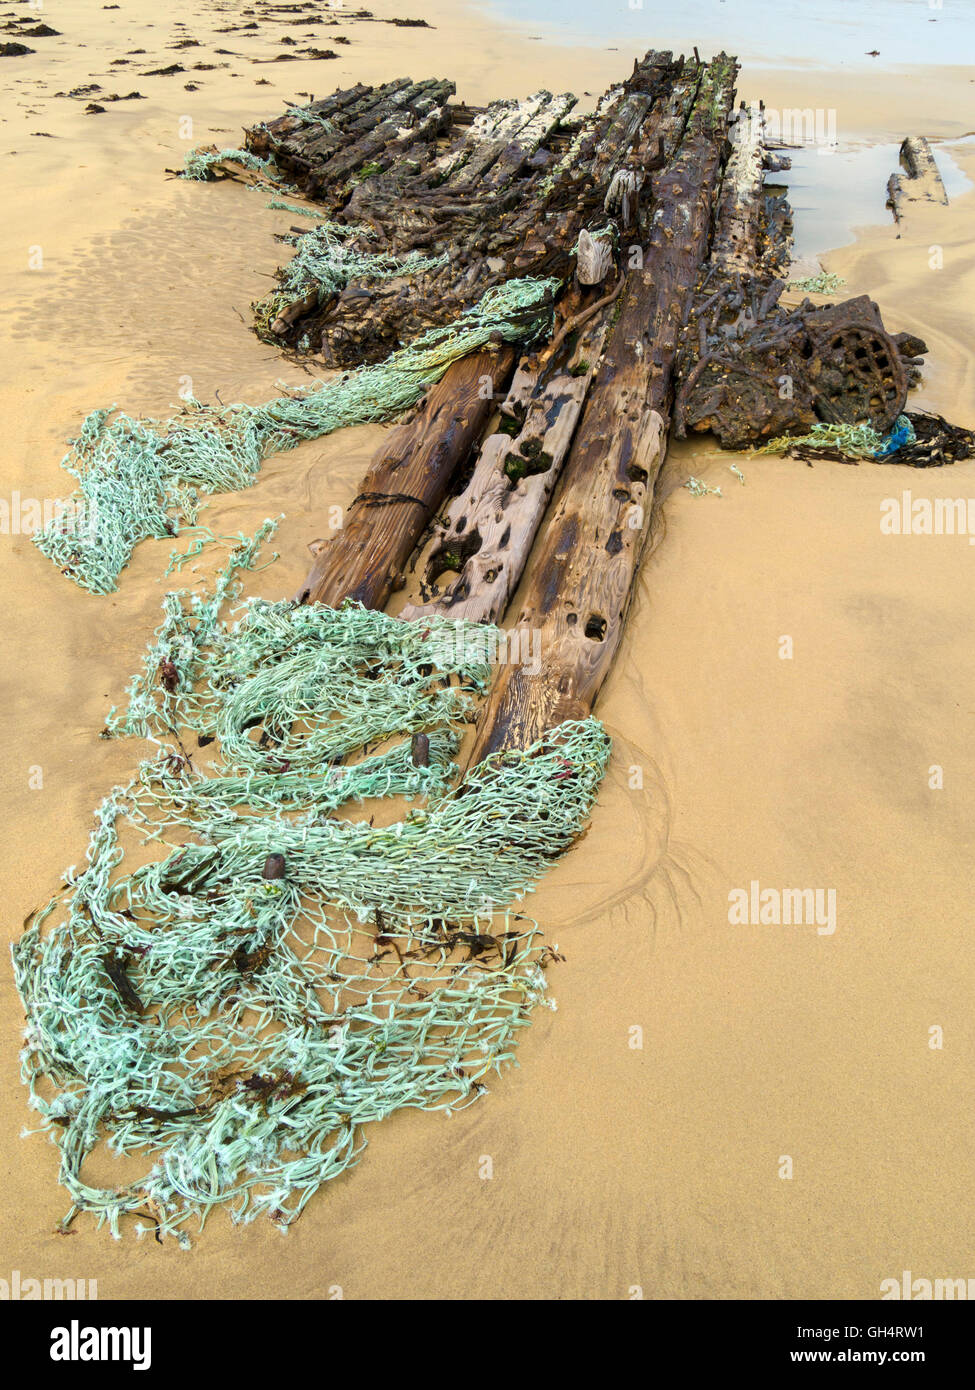 Schiffbruch erleiden Sie, Treibholz und alte Fischernetz begraben im Sand, Balnahard Strand, Insel Colonsay, Schottland, Großbritannien. Stockfoto